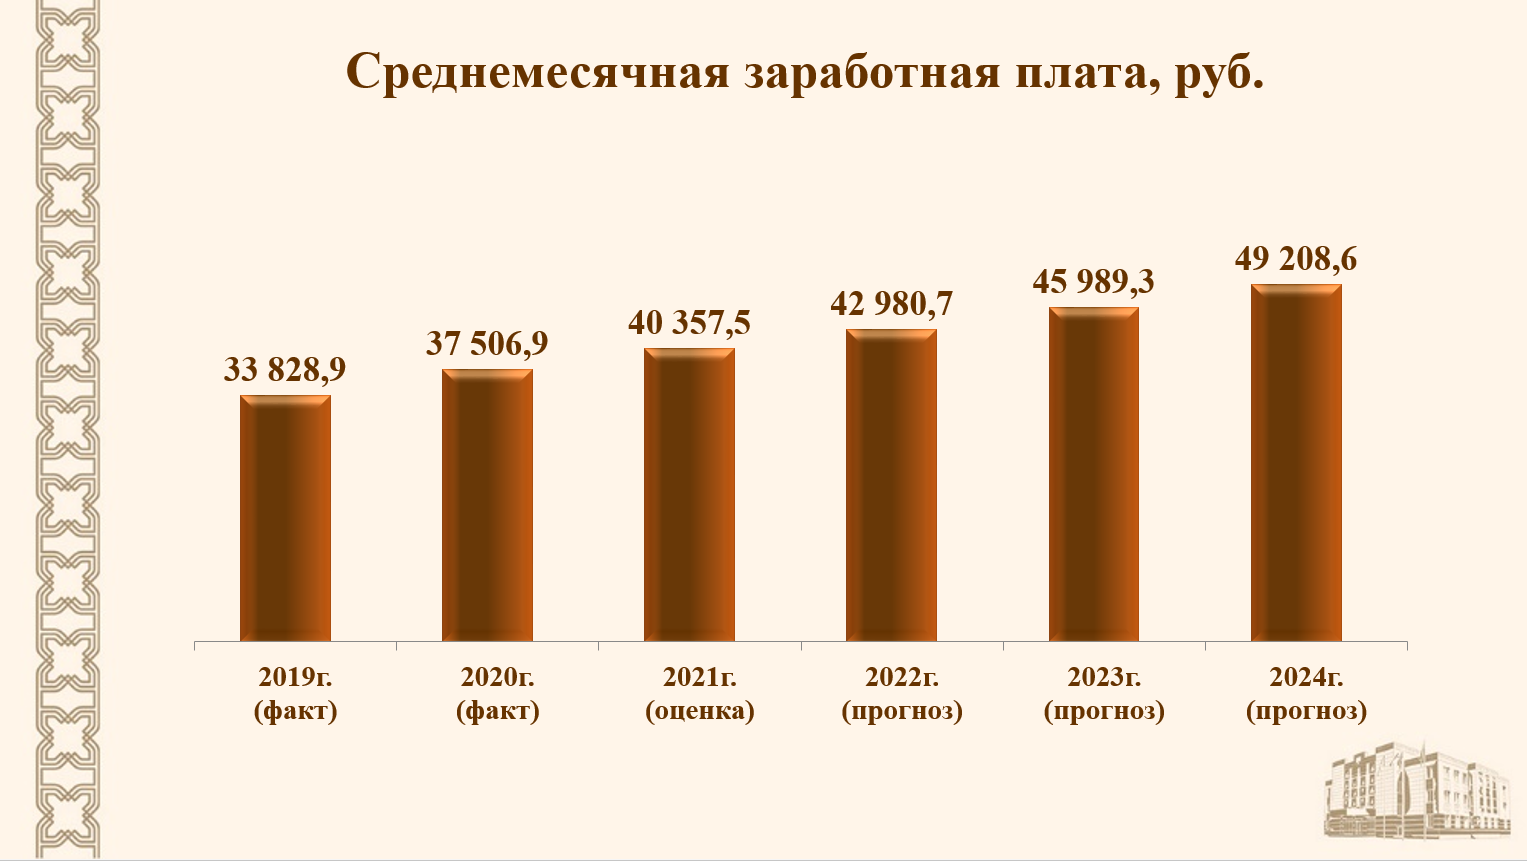 Заработная плата сокращение. Рост зарплаты. Татарстан уровень безработицы 2020 год. Снижение заработной платы 2008.